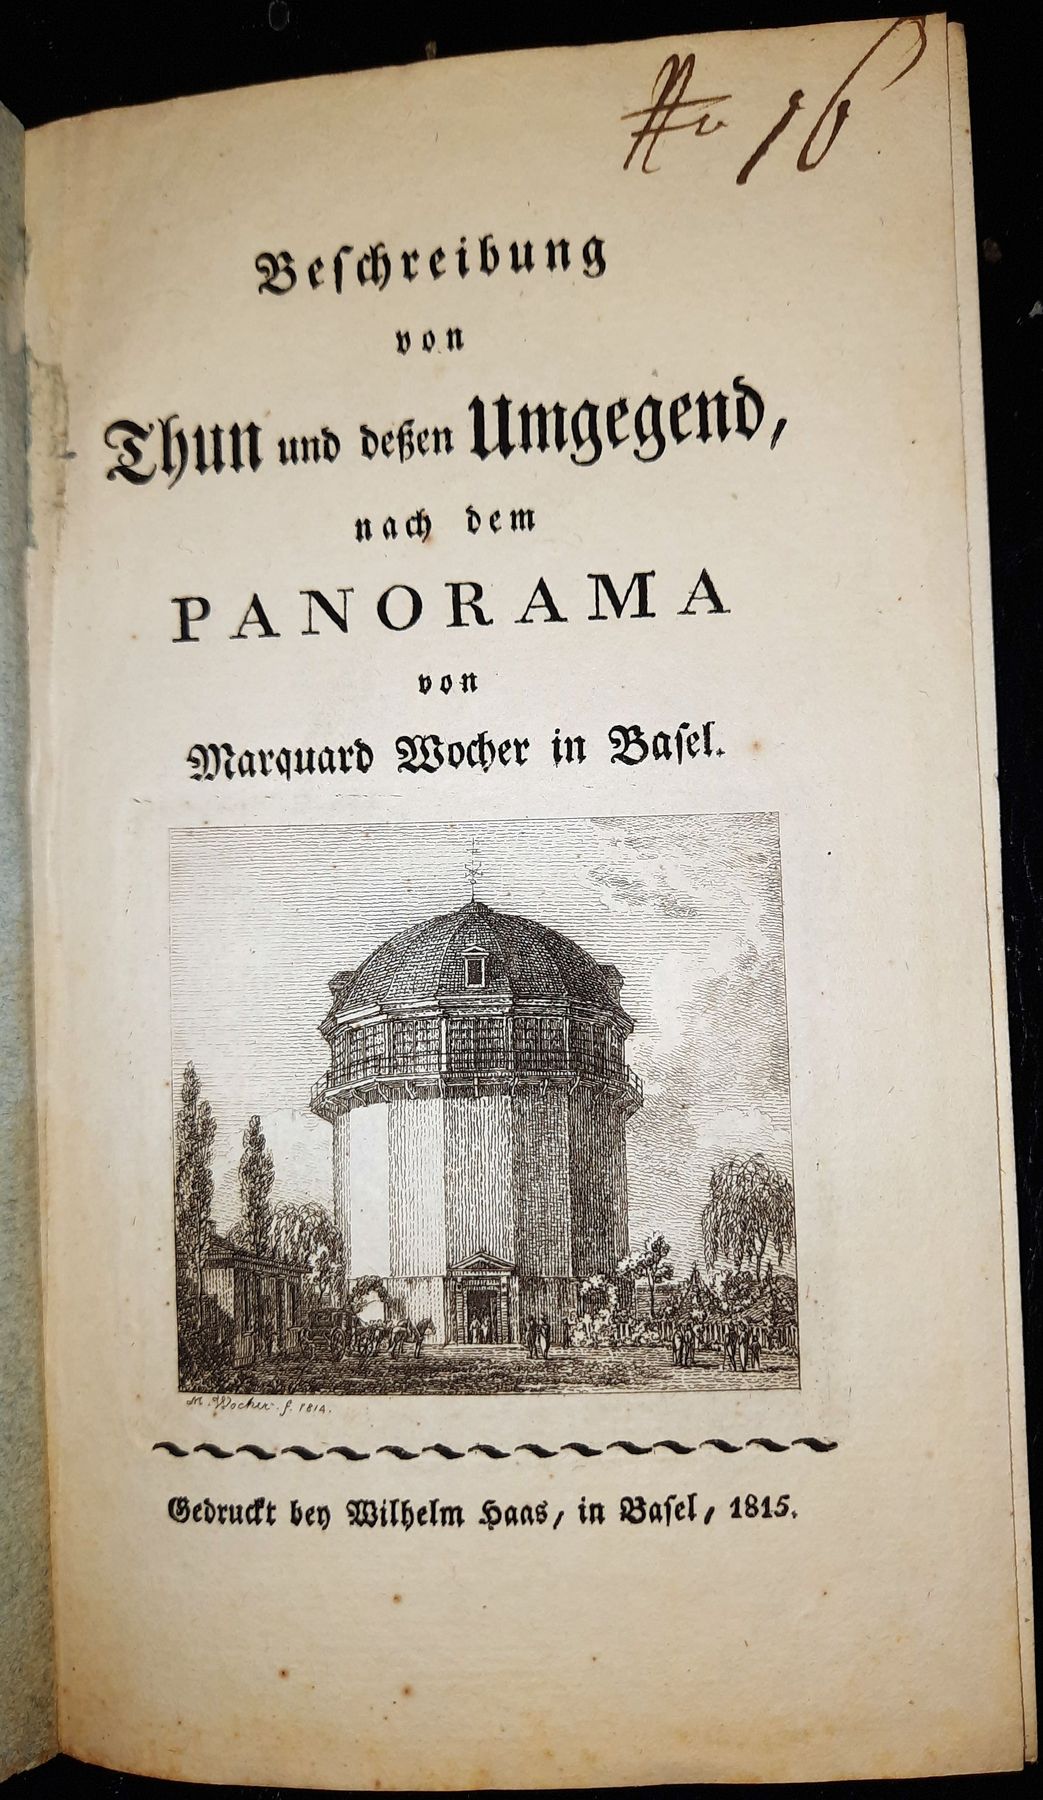 (KNIG, FRANZ NIKLAUS): - Beschreibung von Thun und dessen Umgegend, nach dem Panorama von Marquard Wocher in Basel..